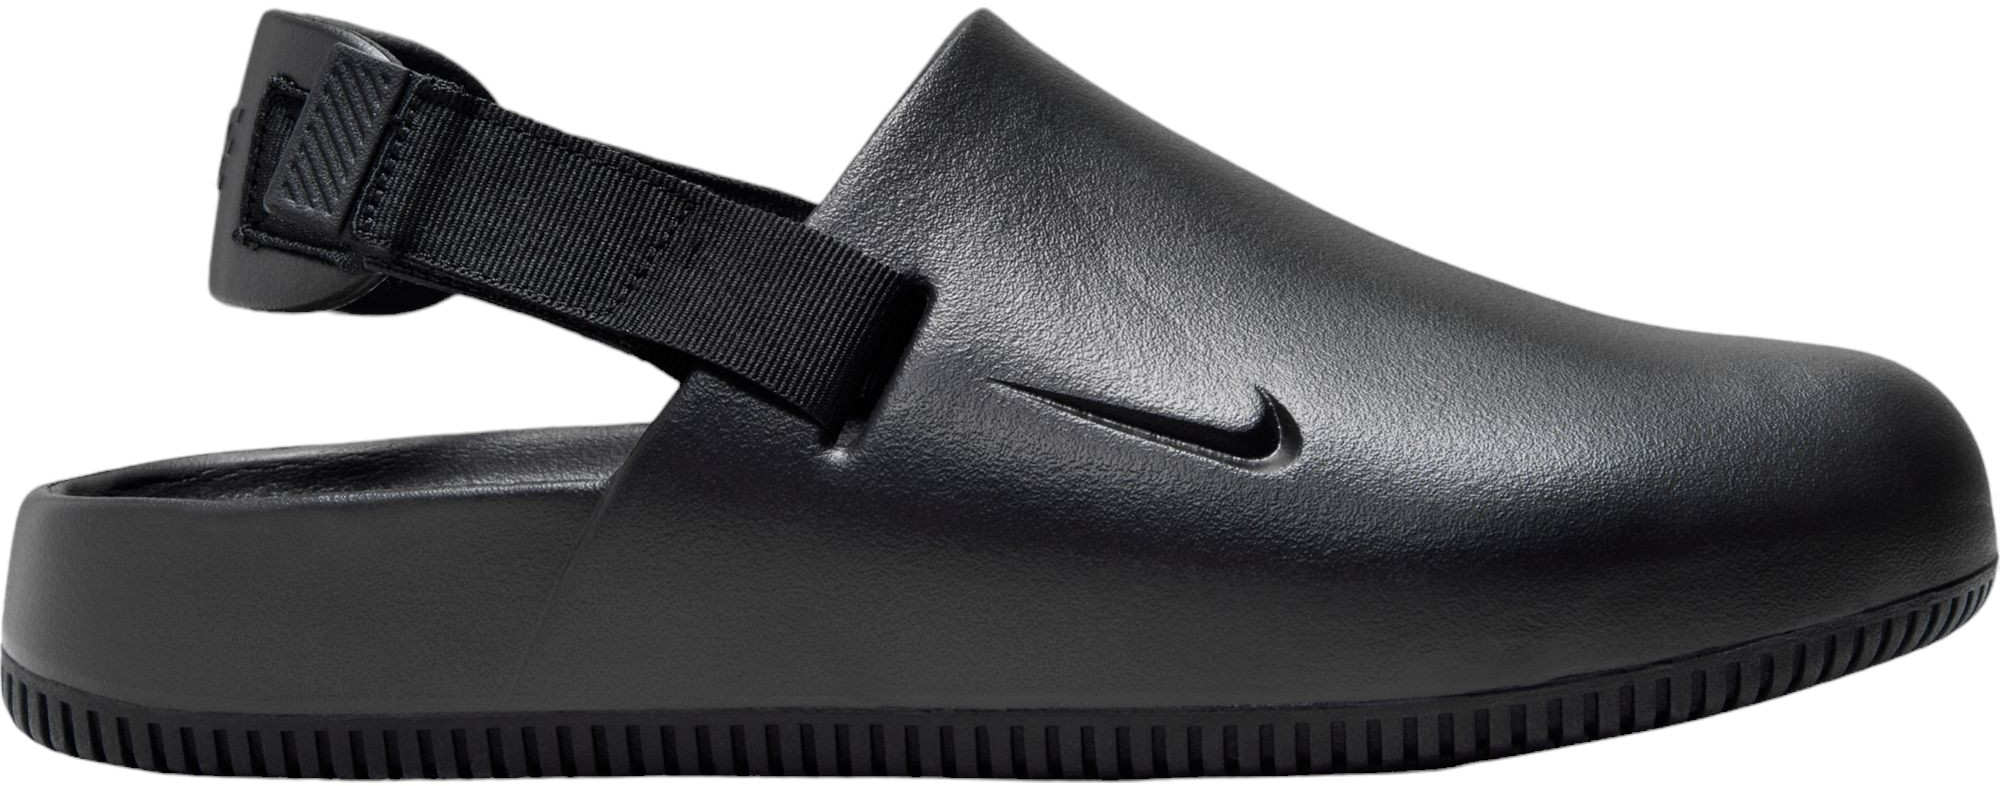 Slippers Nike CALM MULE